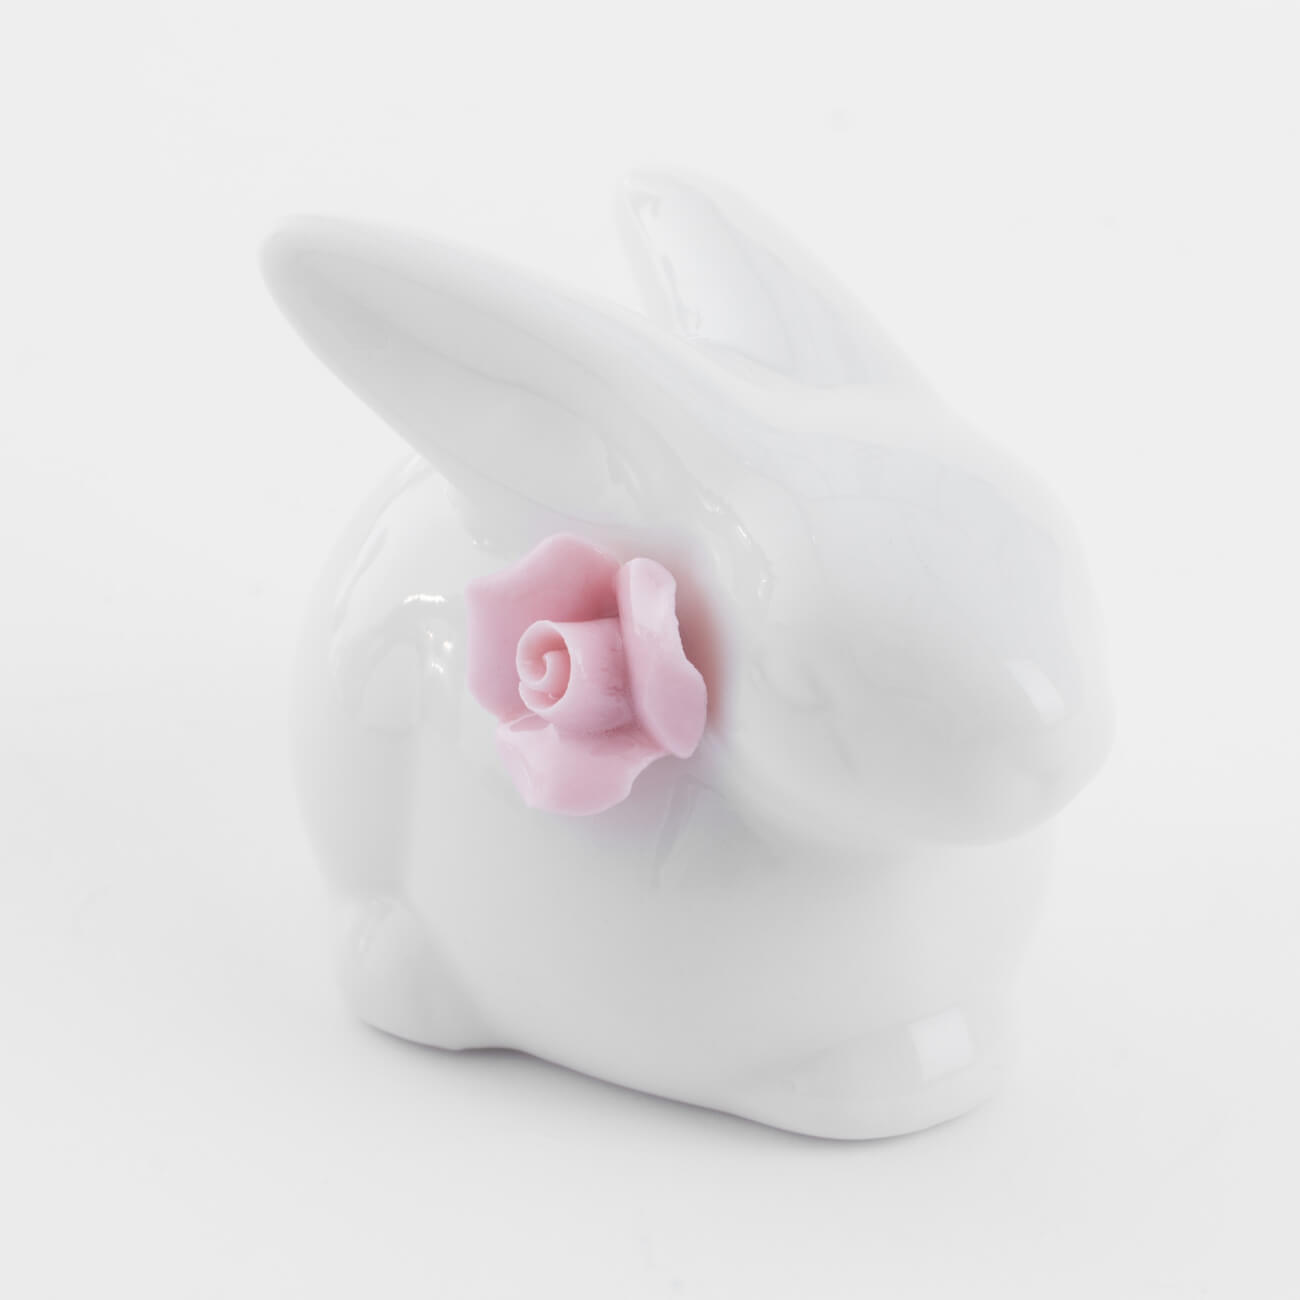 статуэтка с подсветкой 13 см фарфор p белая кролик с ами easter Статуэтка, 5 см, фарфор P, белая, Кролик с цветком, Pure Easter